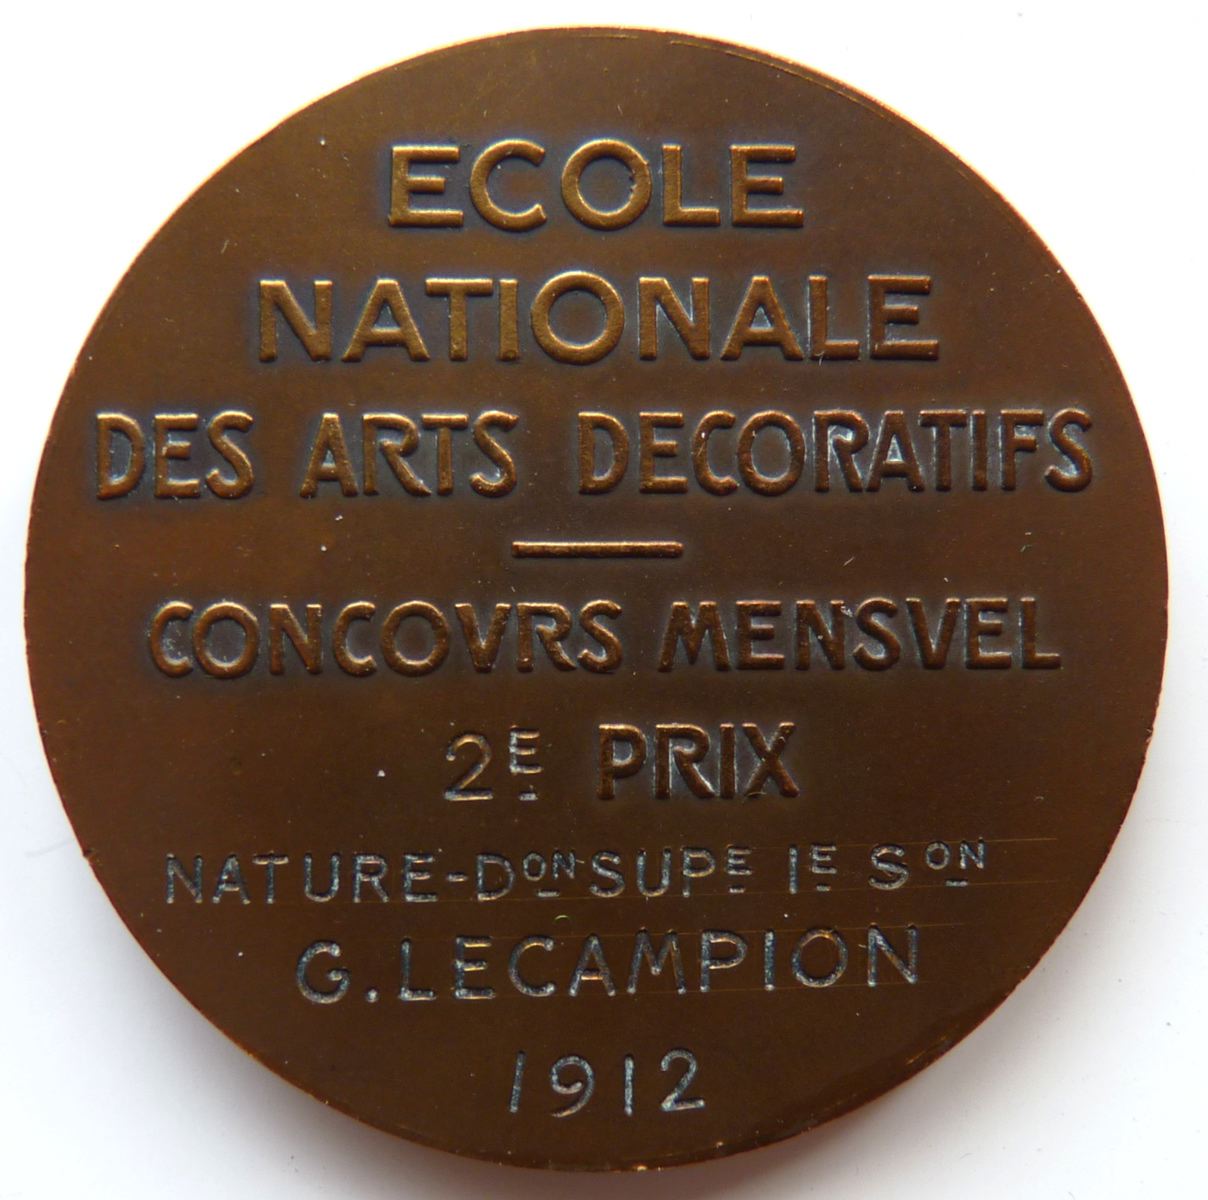 Ecole Nationale des Arts décoratifs - Concours Mensuel 2e prix - G. Lecampion 1912